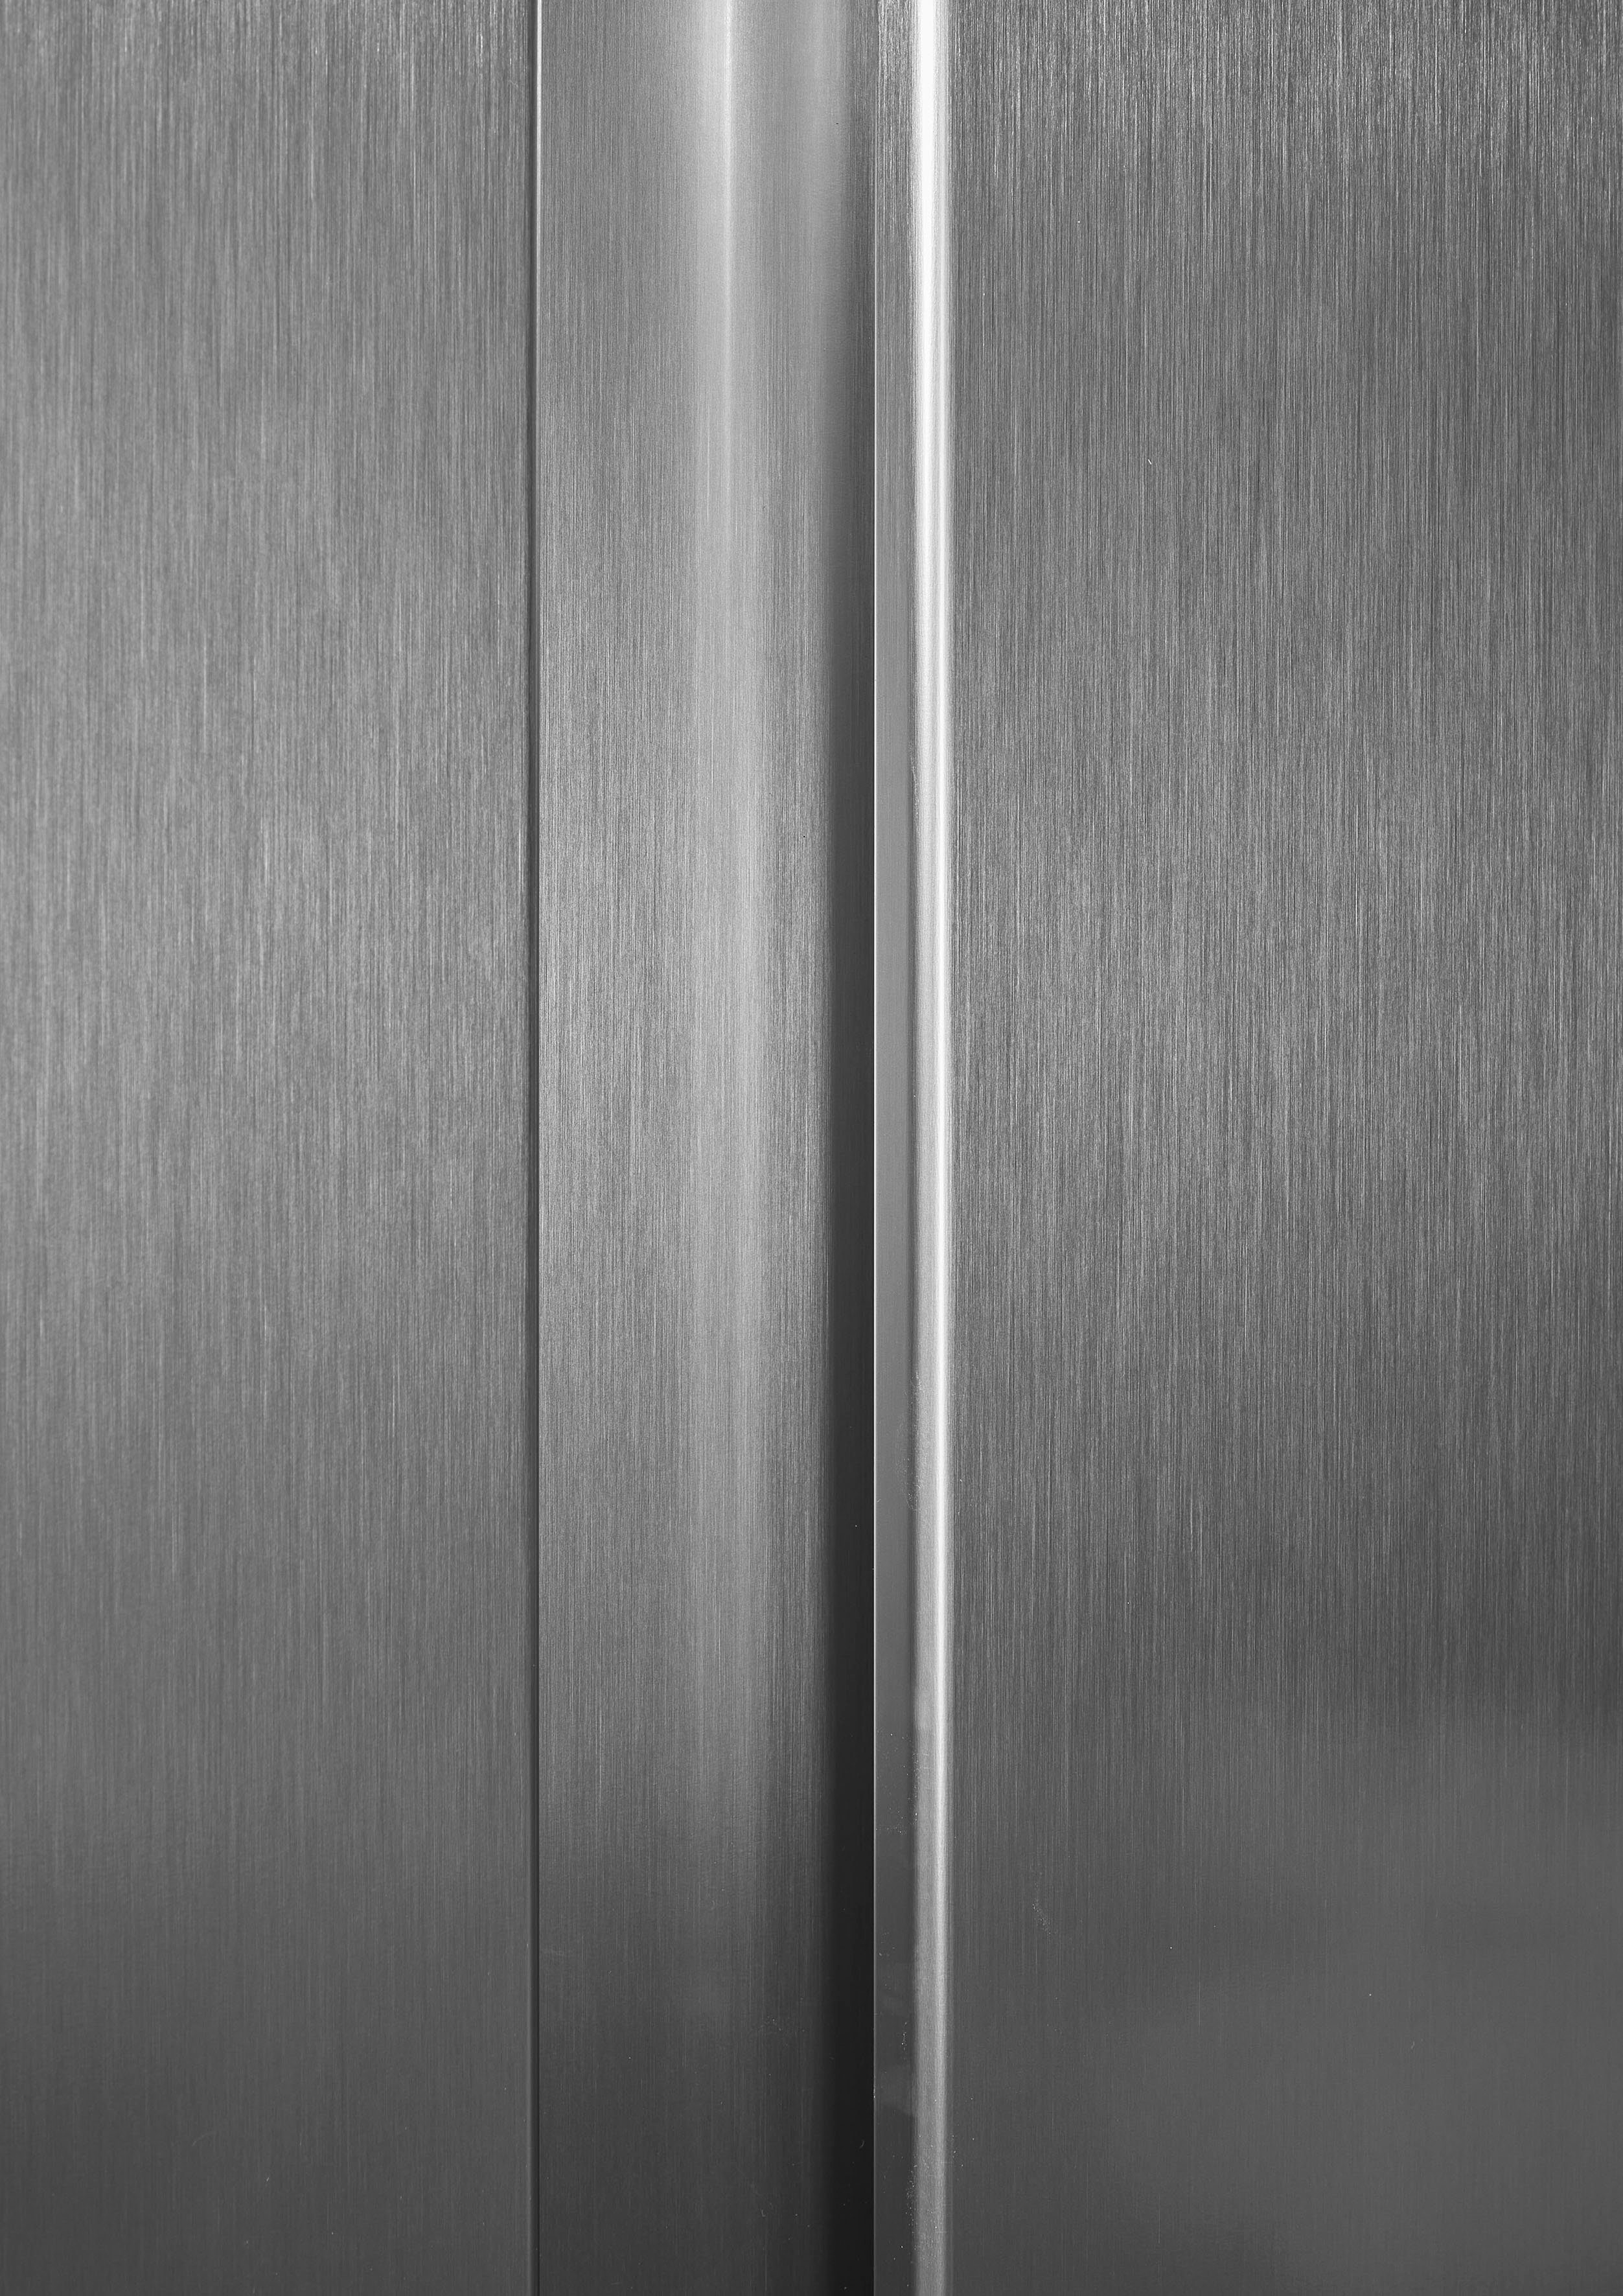 hoch, 91 178,6 cm cm grau RS677N4ACC, breit Hisense Side-by-Side